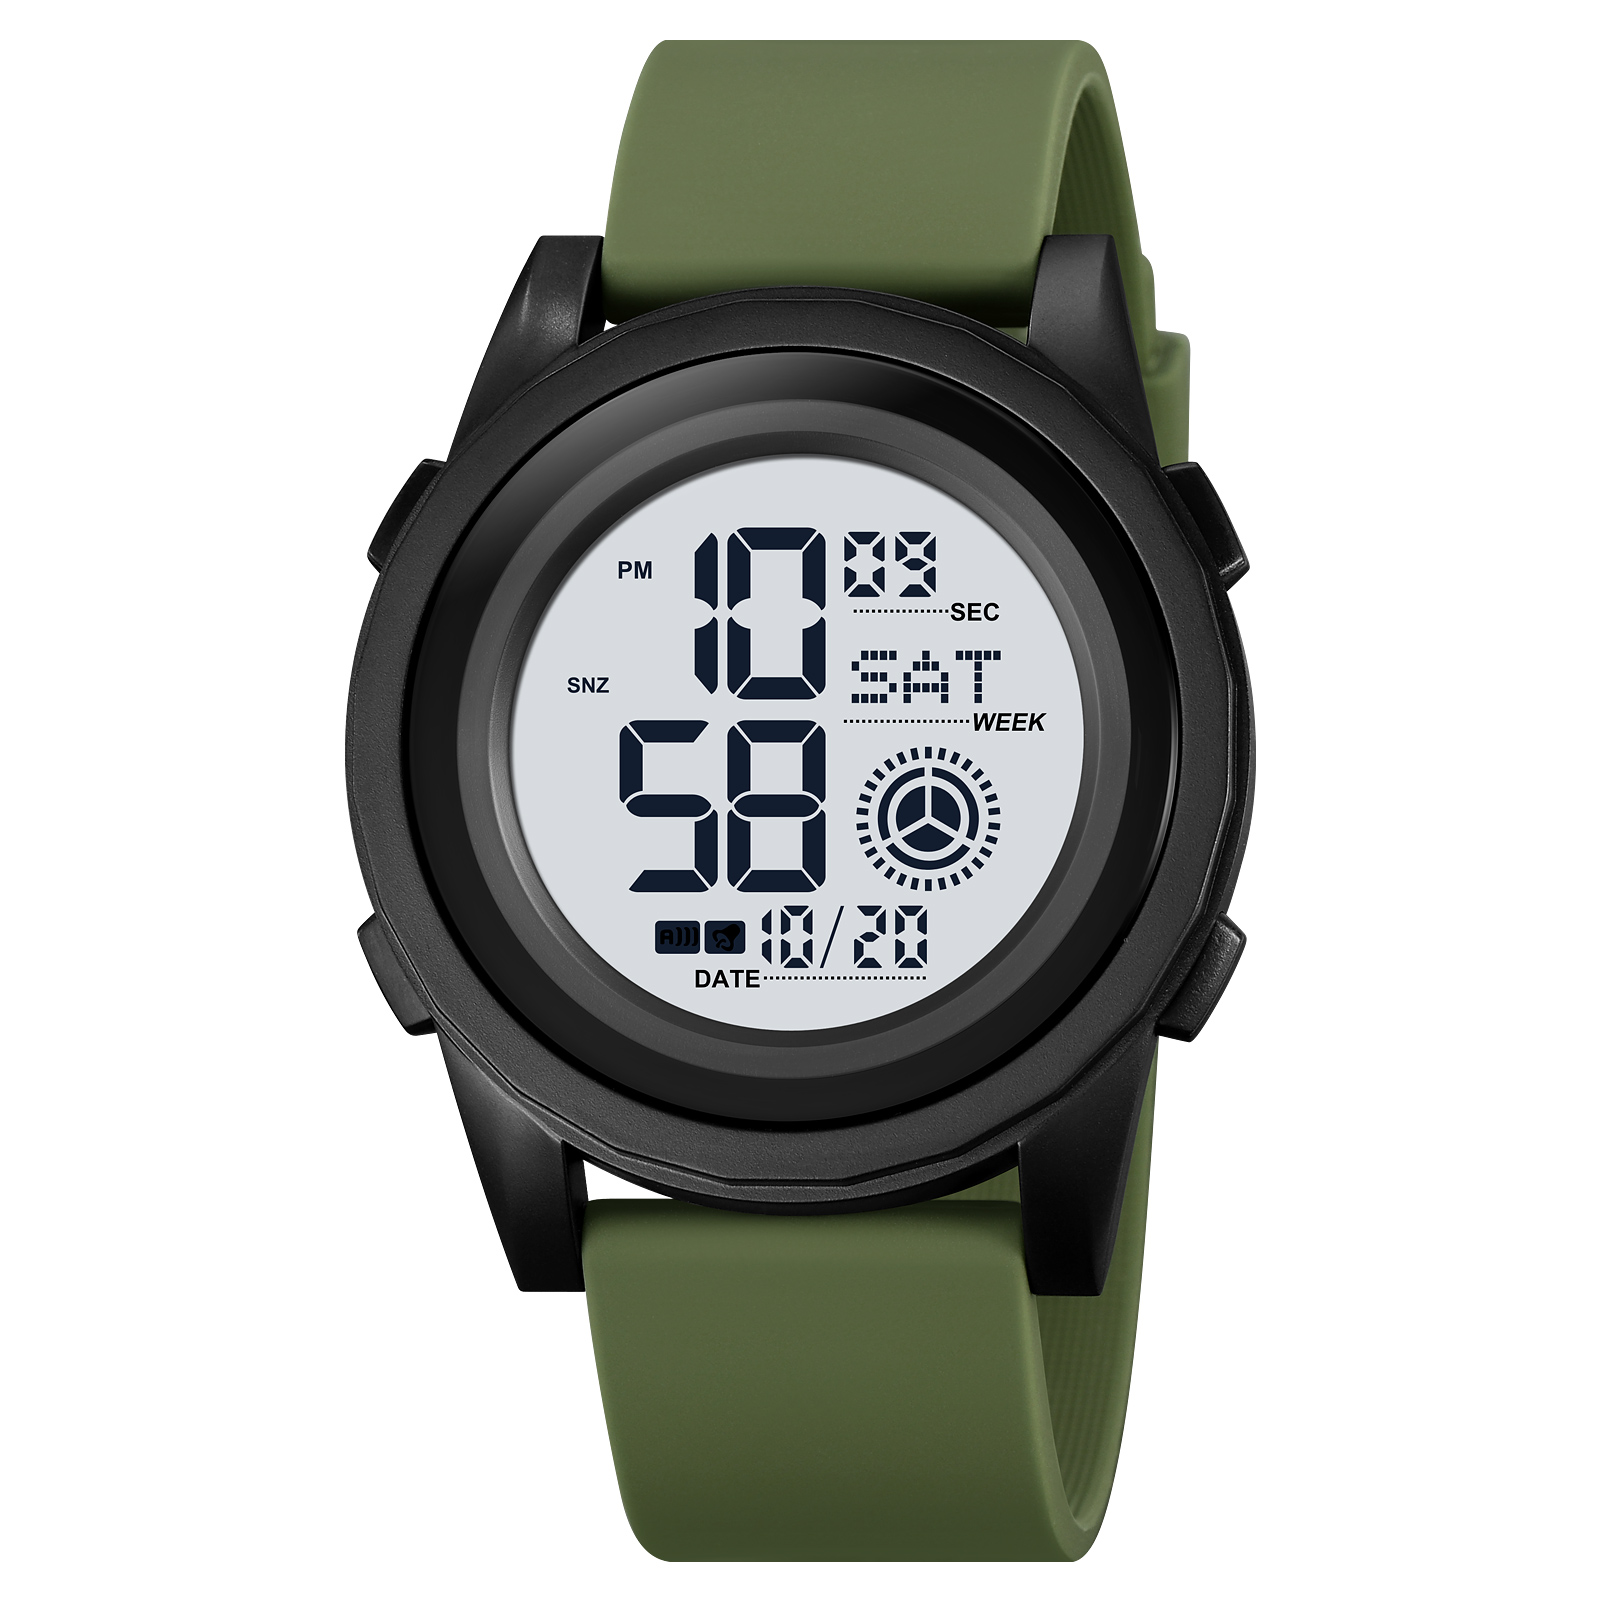 waterproof digital watch sports-Skmei Watch Manufacture Co.,Ltd